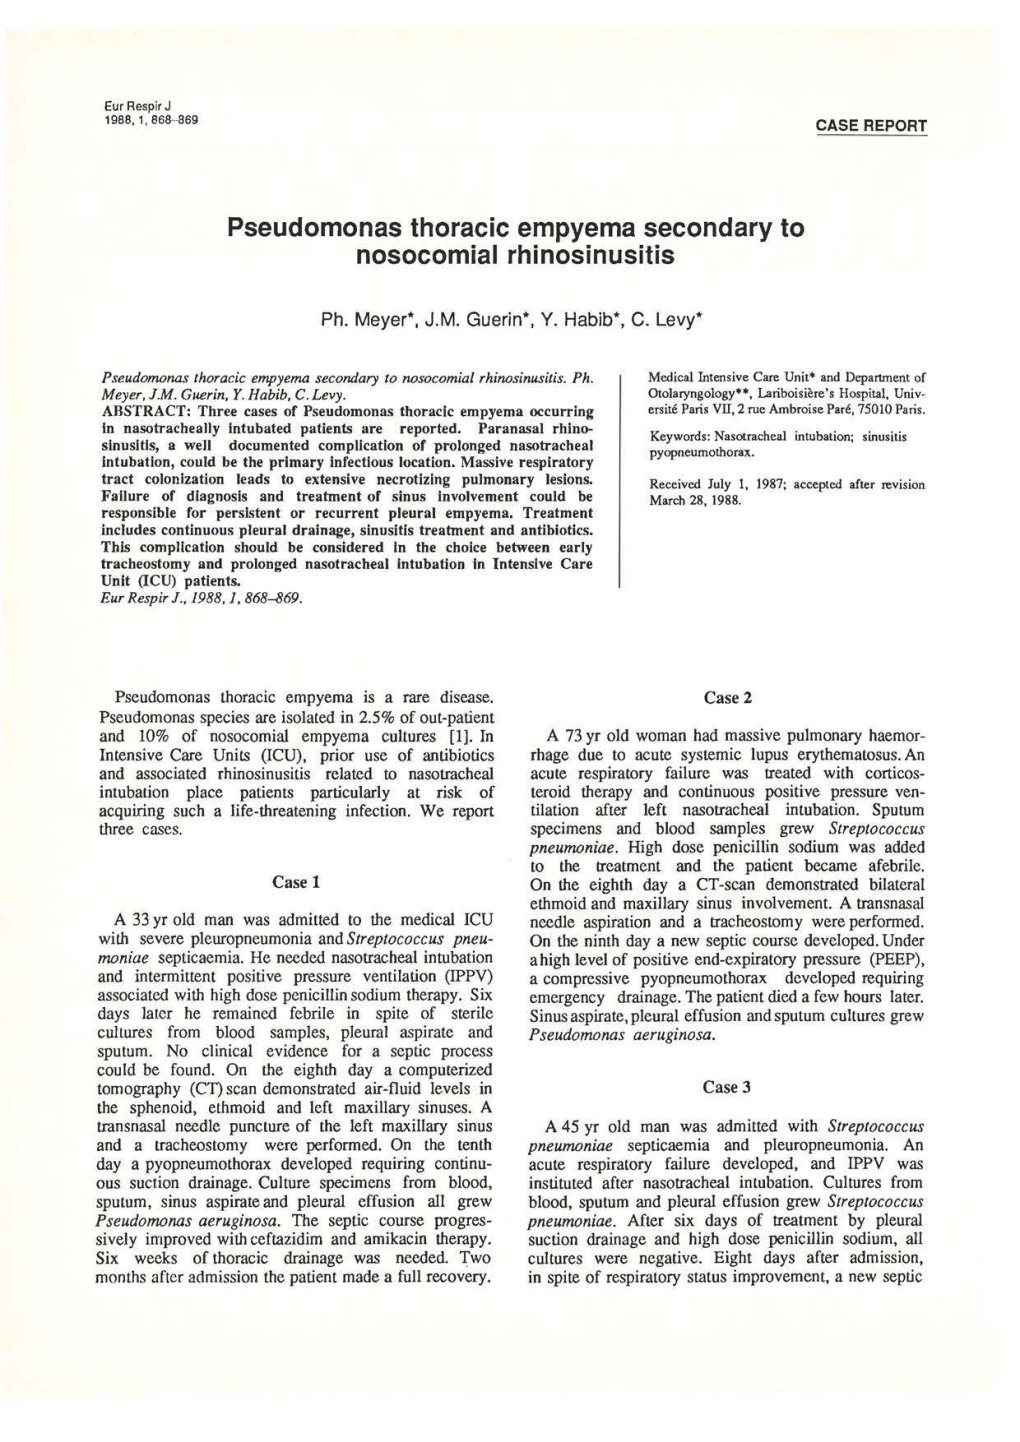 Pseudomonas Thoracic Empyema Secondary to Nosocomial Rhinosinusitis